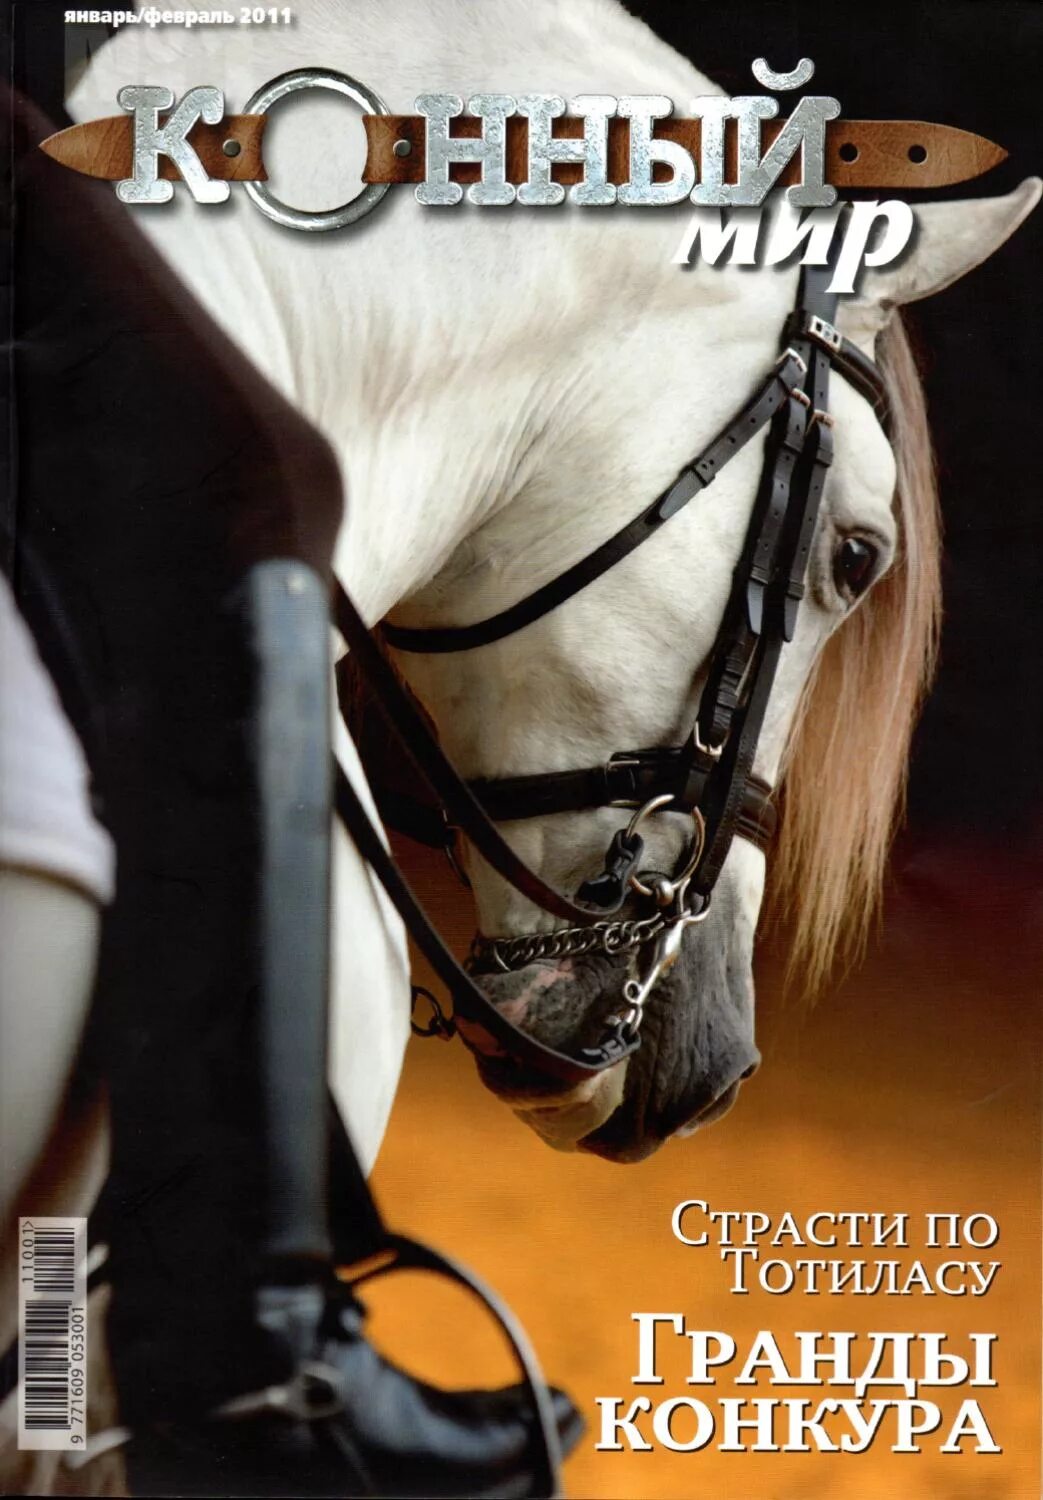 Обложка лошади. Журнал конный мир. Журнал про лошадей. Журнал про конный спорт. Журнал про лошадей конный мир.